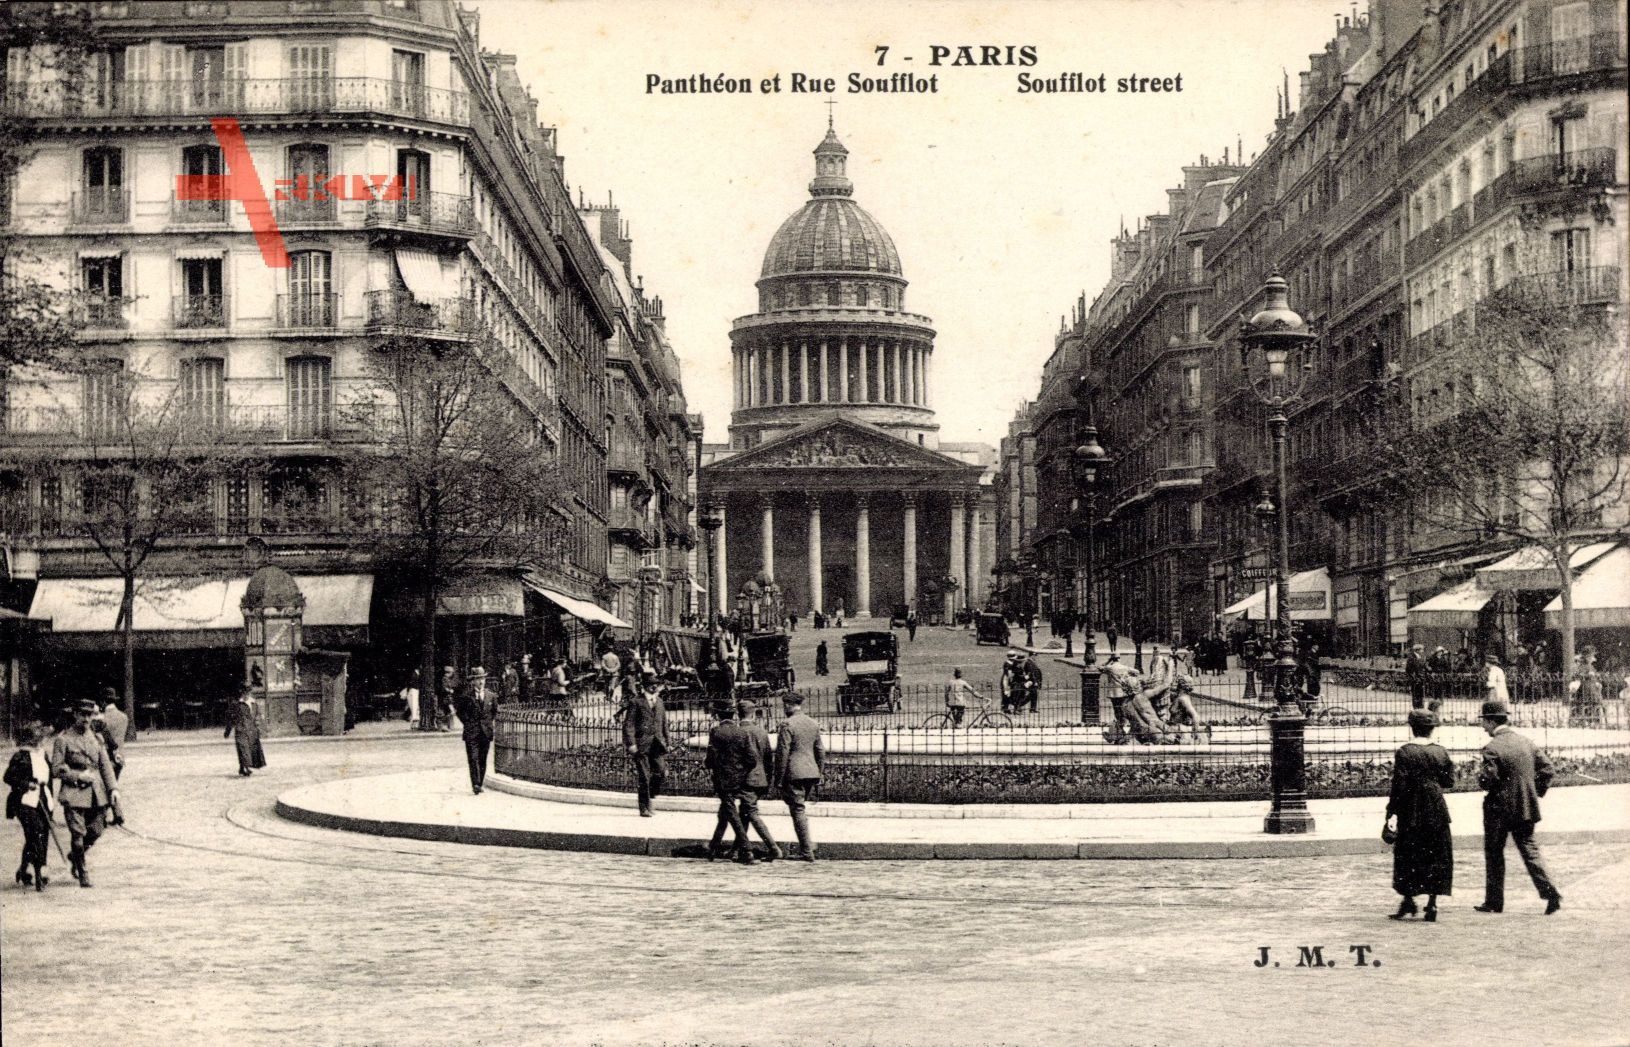 Paris, Pantheon et Rue Soufflot, Passanten, Autos, Statue, Geschäfte